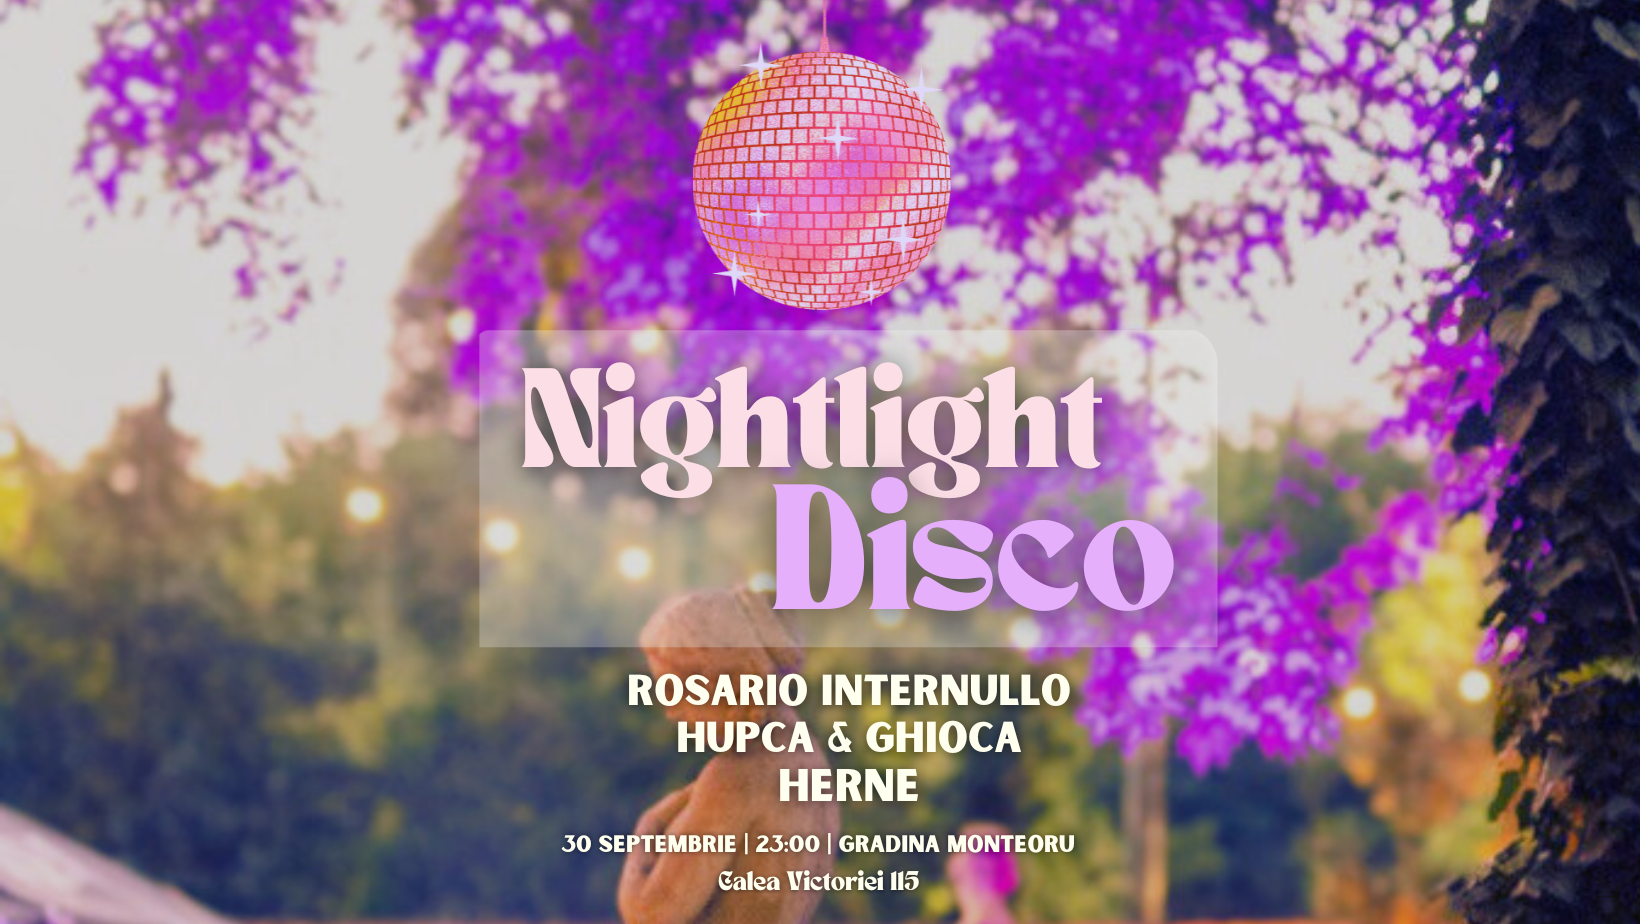 Nightlight Disco with Rosario Internullo, Hupca & Ghioca, Herne - Página frontal